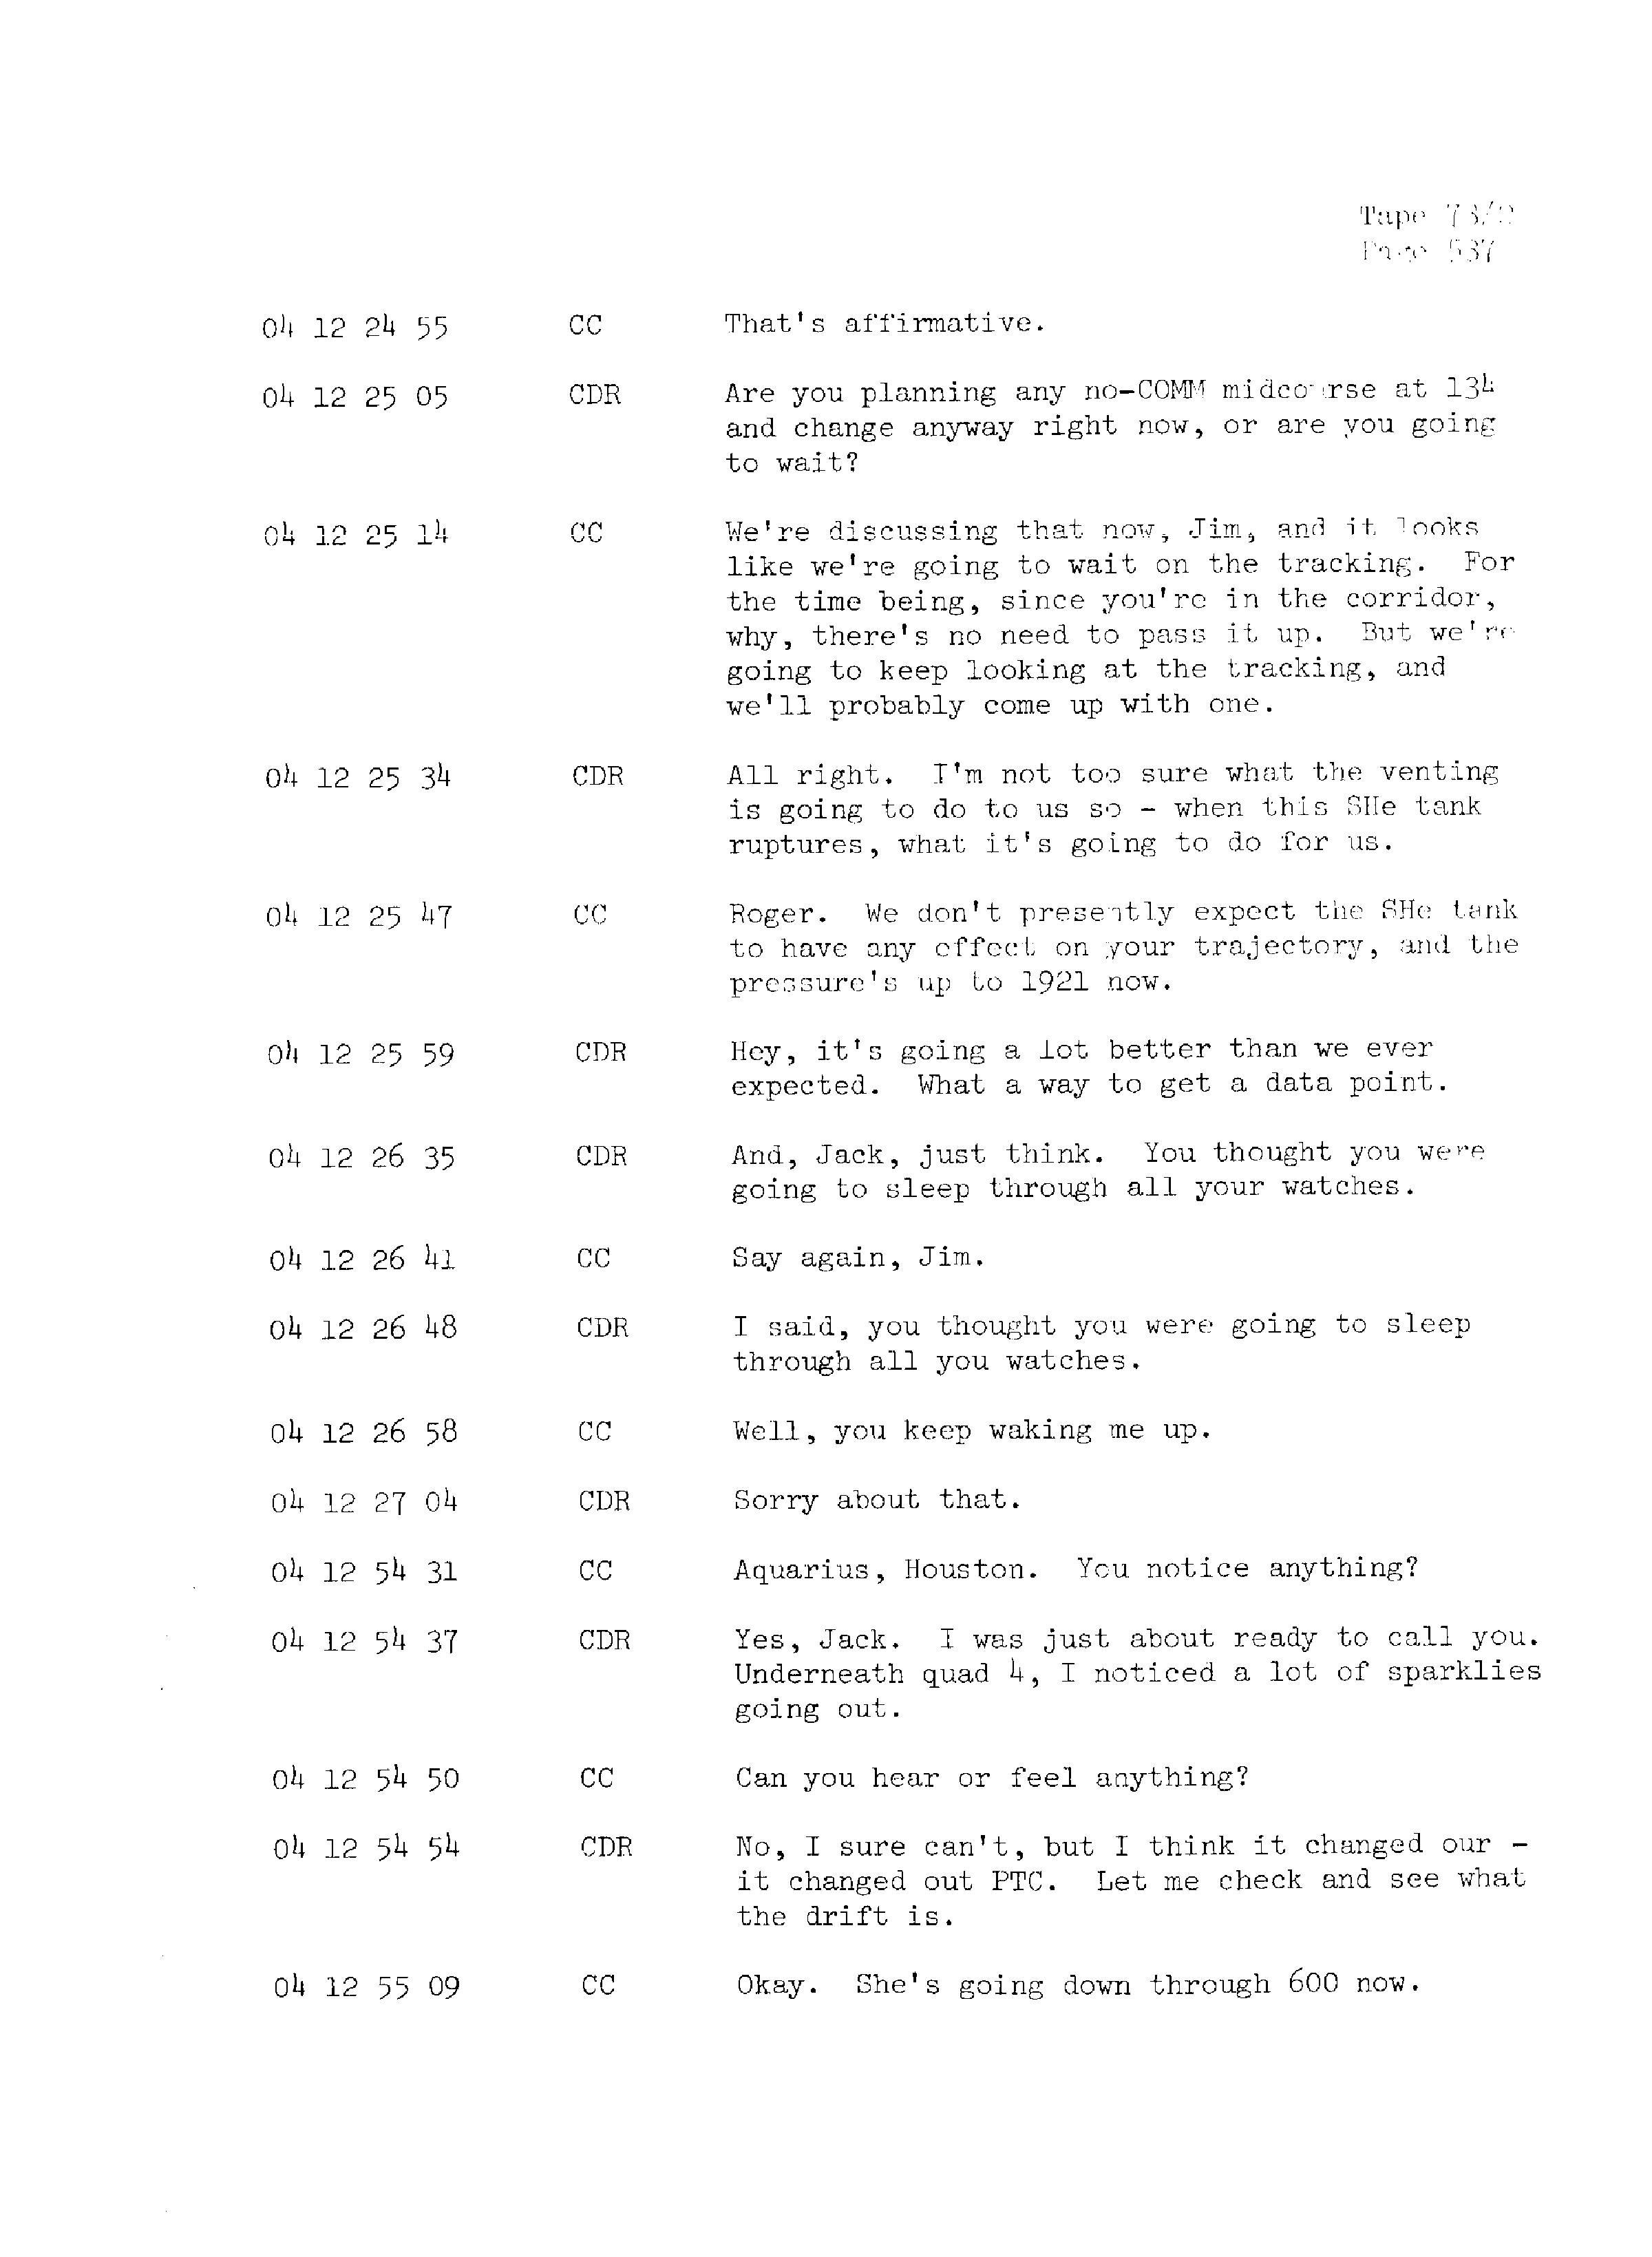 Page 544 of Apollo 13’s original transcript